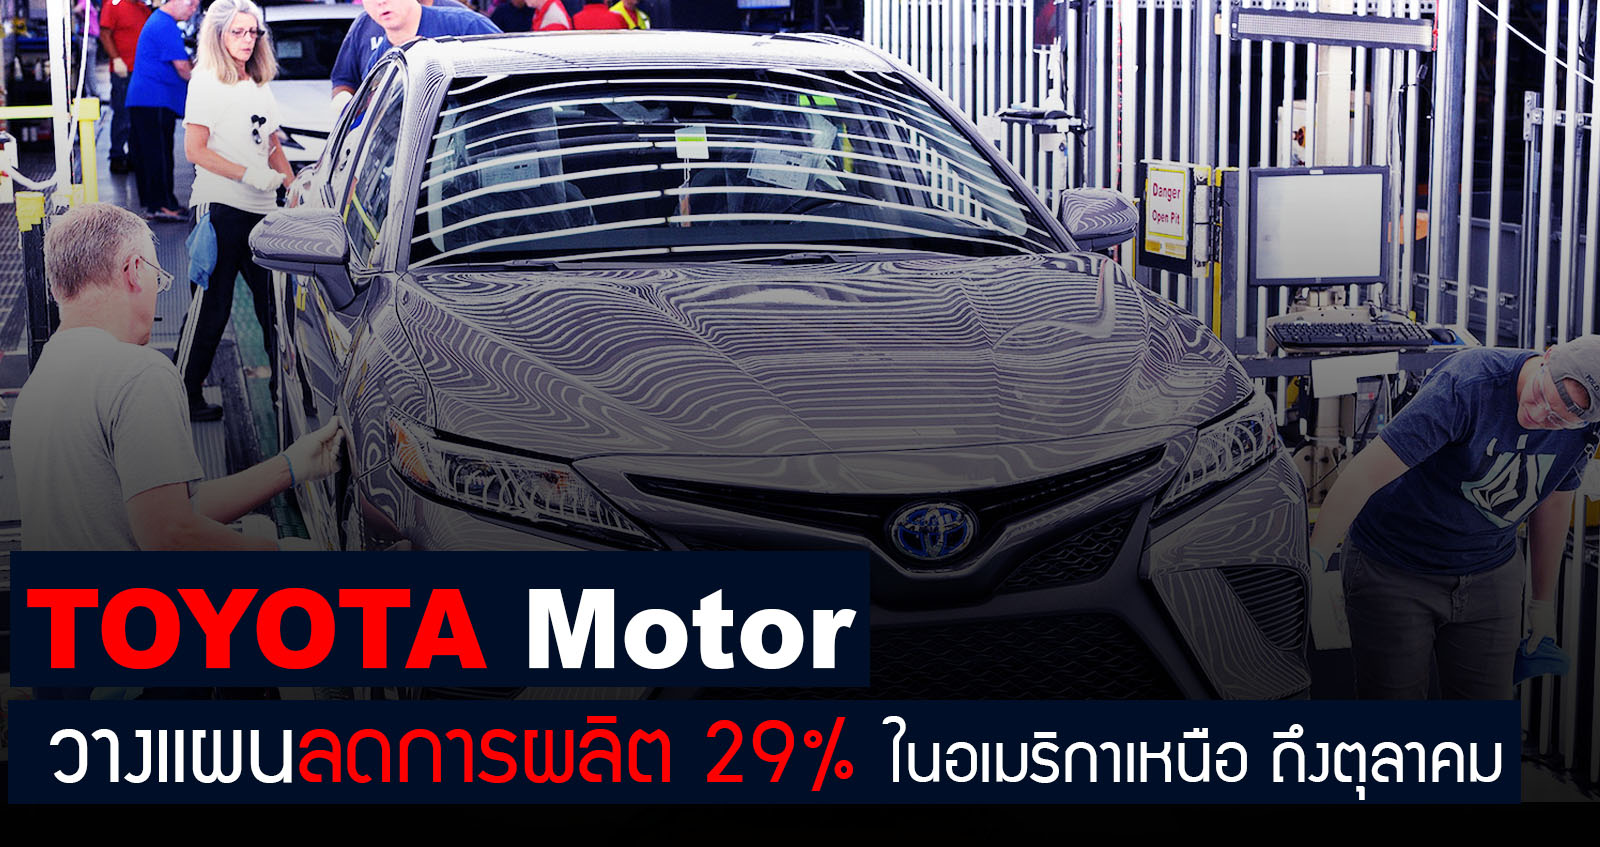 Toyota Motor วางแผนลดการผลิต 29% ในอเมริกาเหนือ ถึงตุลาคมนี้